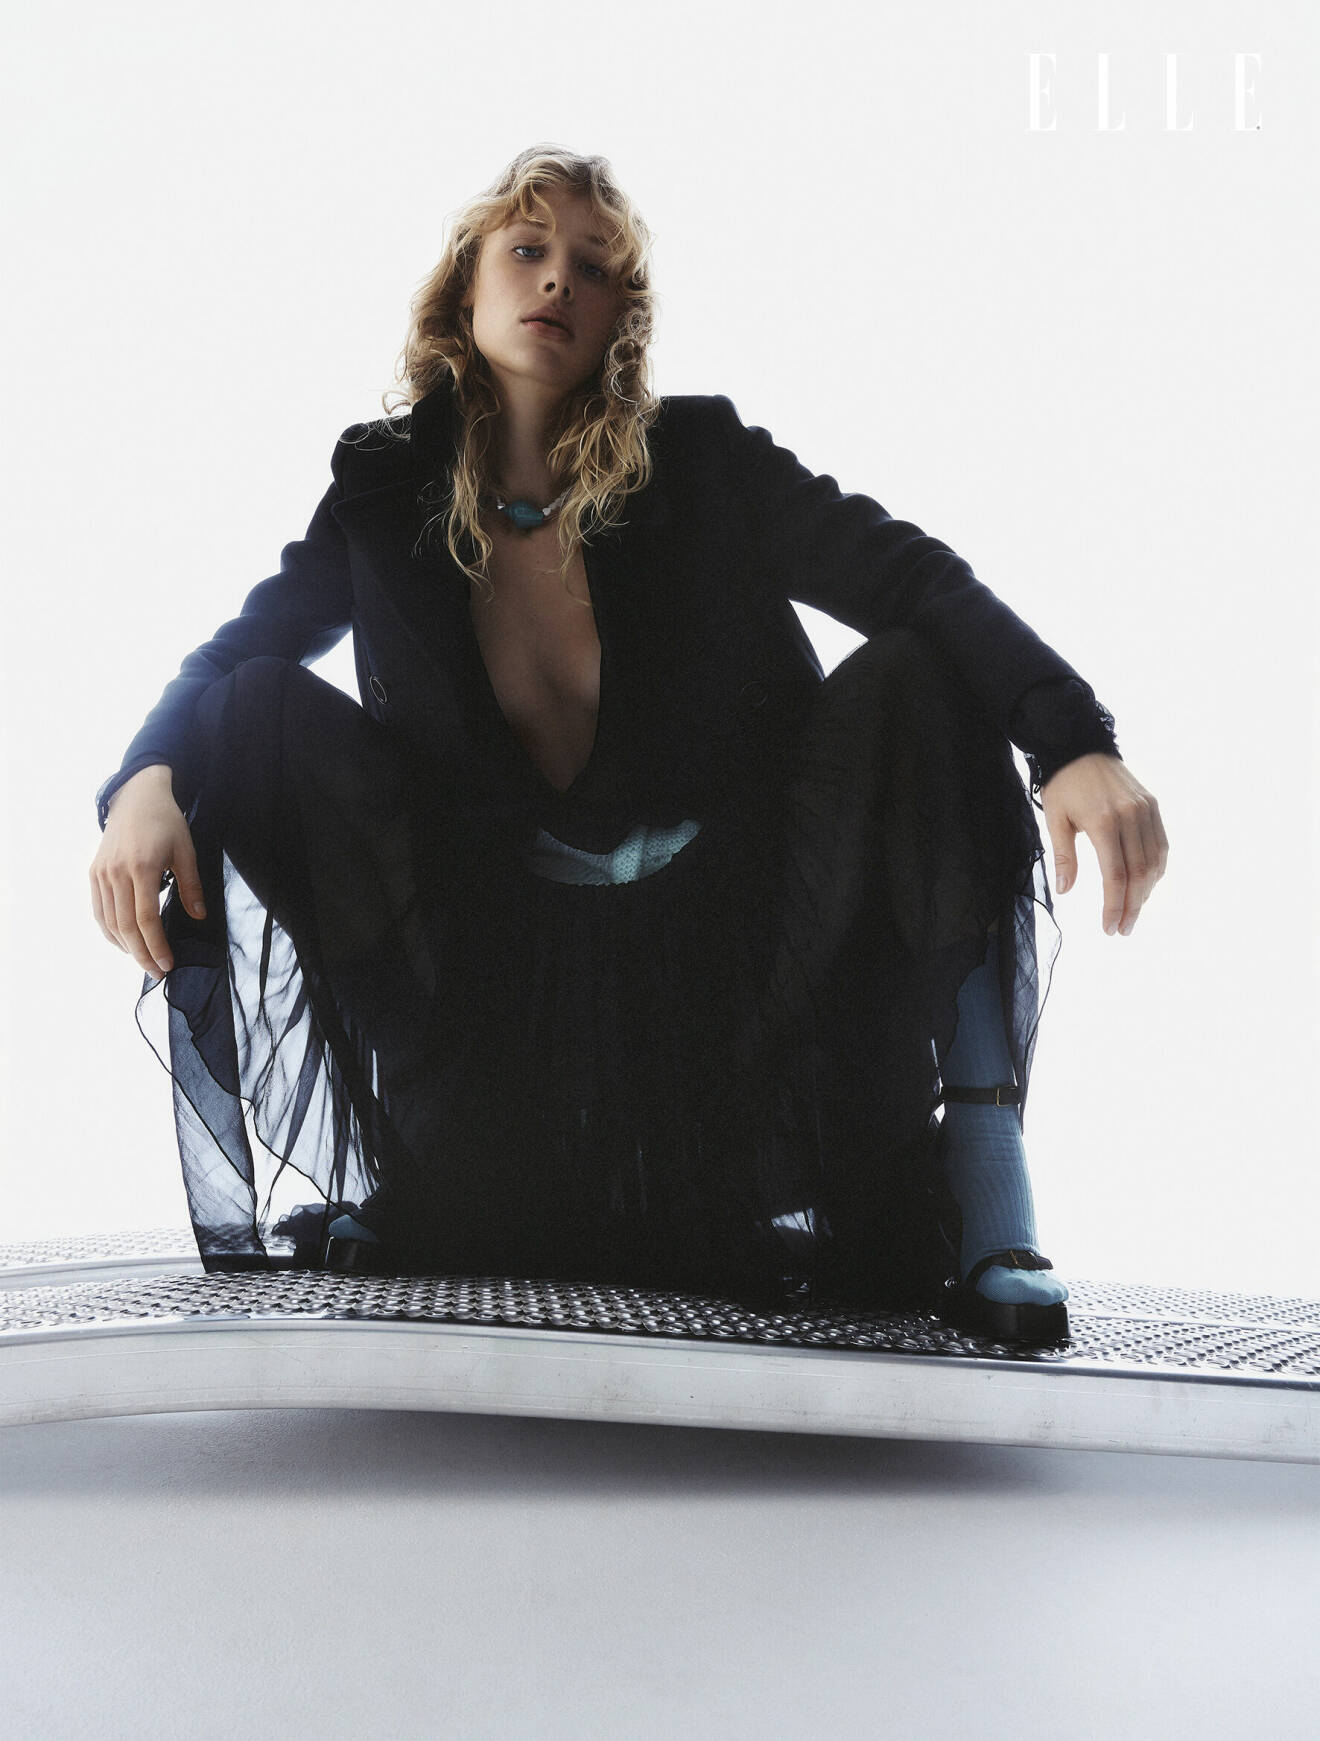 Fotomodellen har på sig en svart jacka och klänning, båda från Saint Laurent.